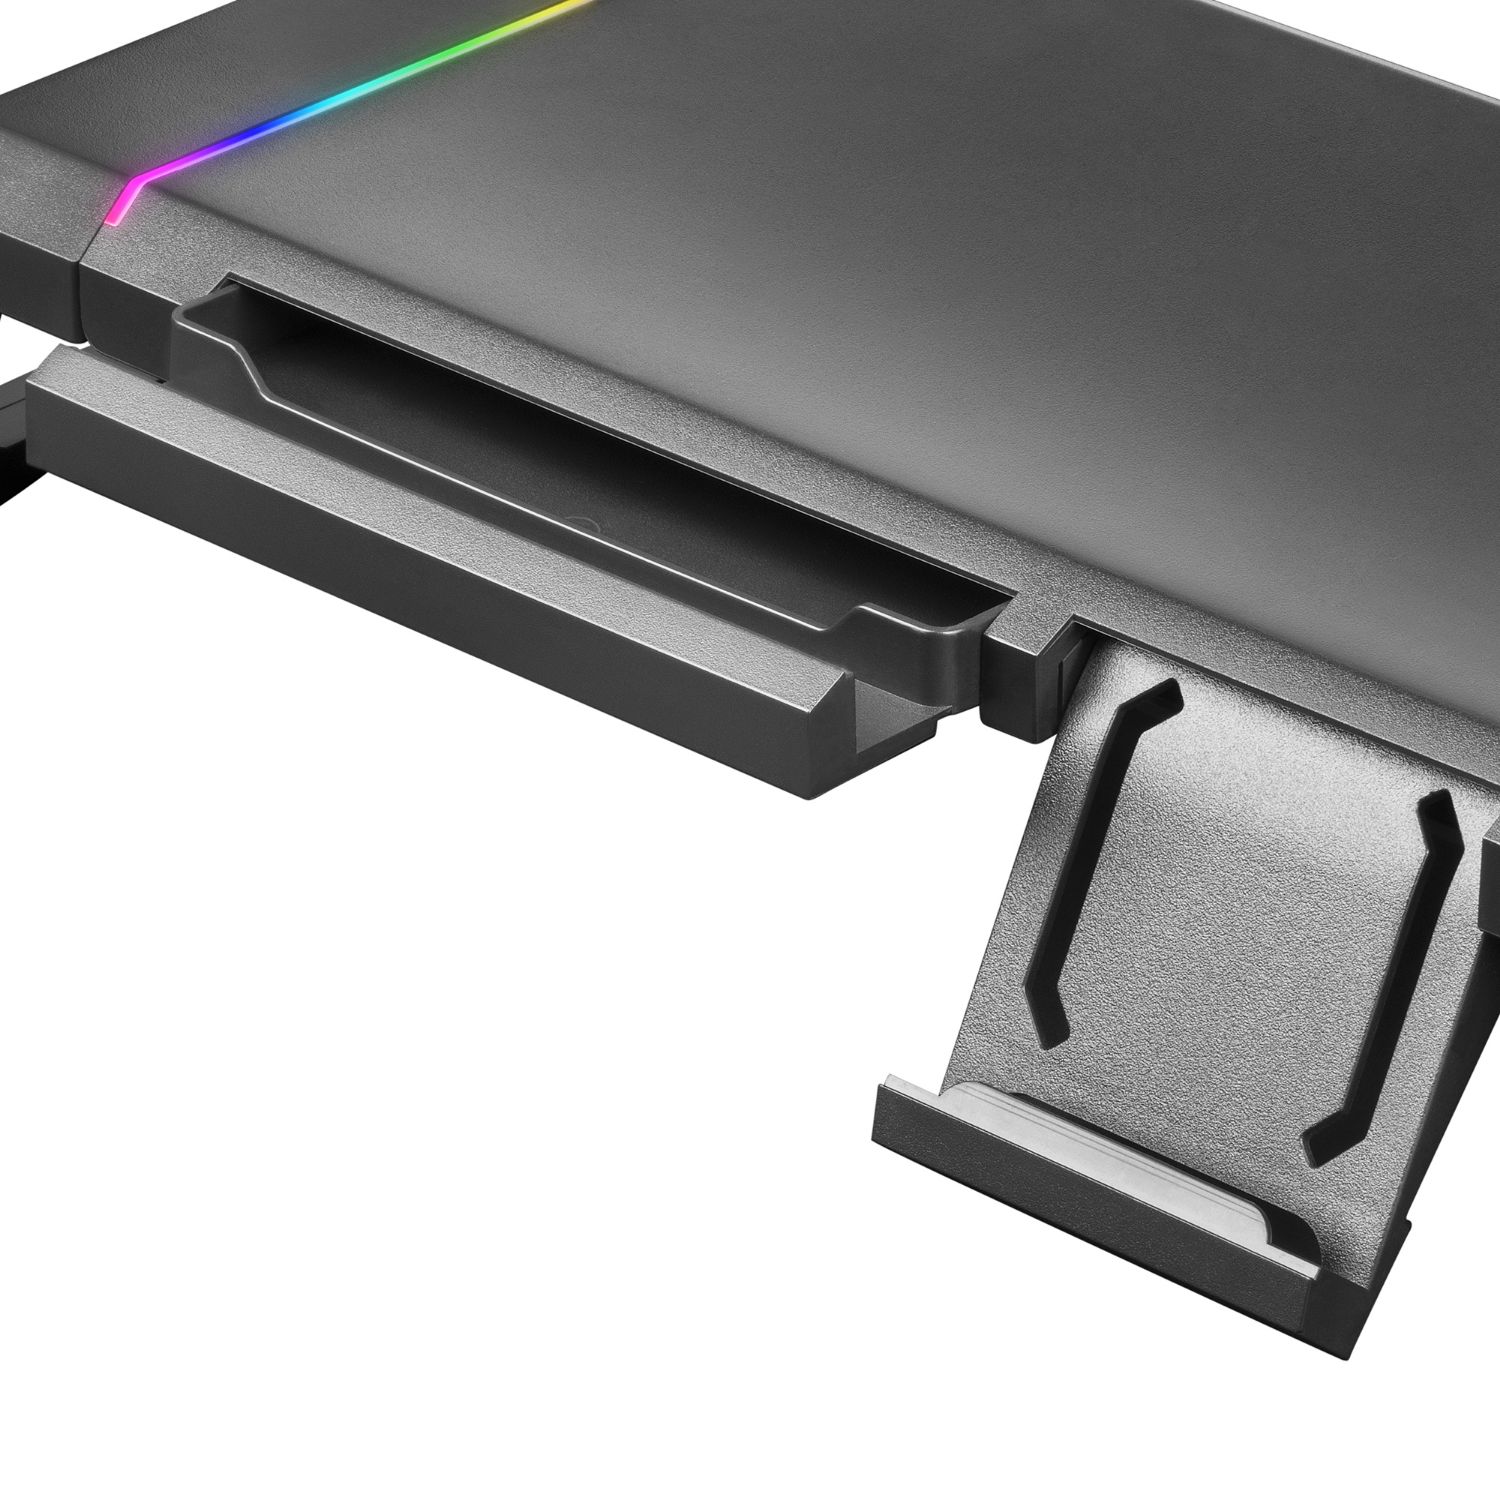 MGS - Soporte de Sobremesa Mars Gaming para Monitor USB3.0 RGB hasta 14.60kg (MGS)